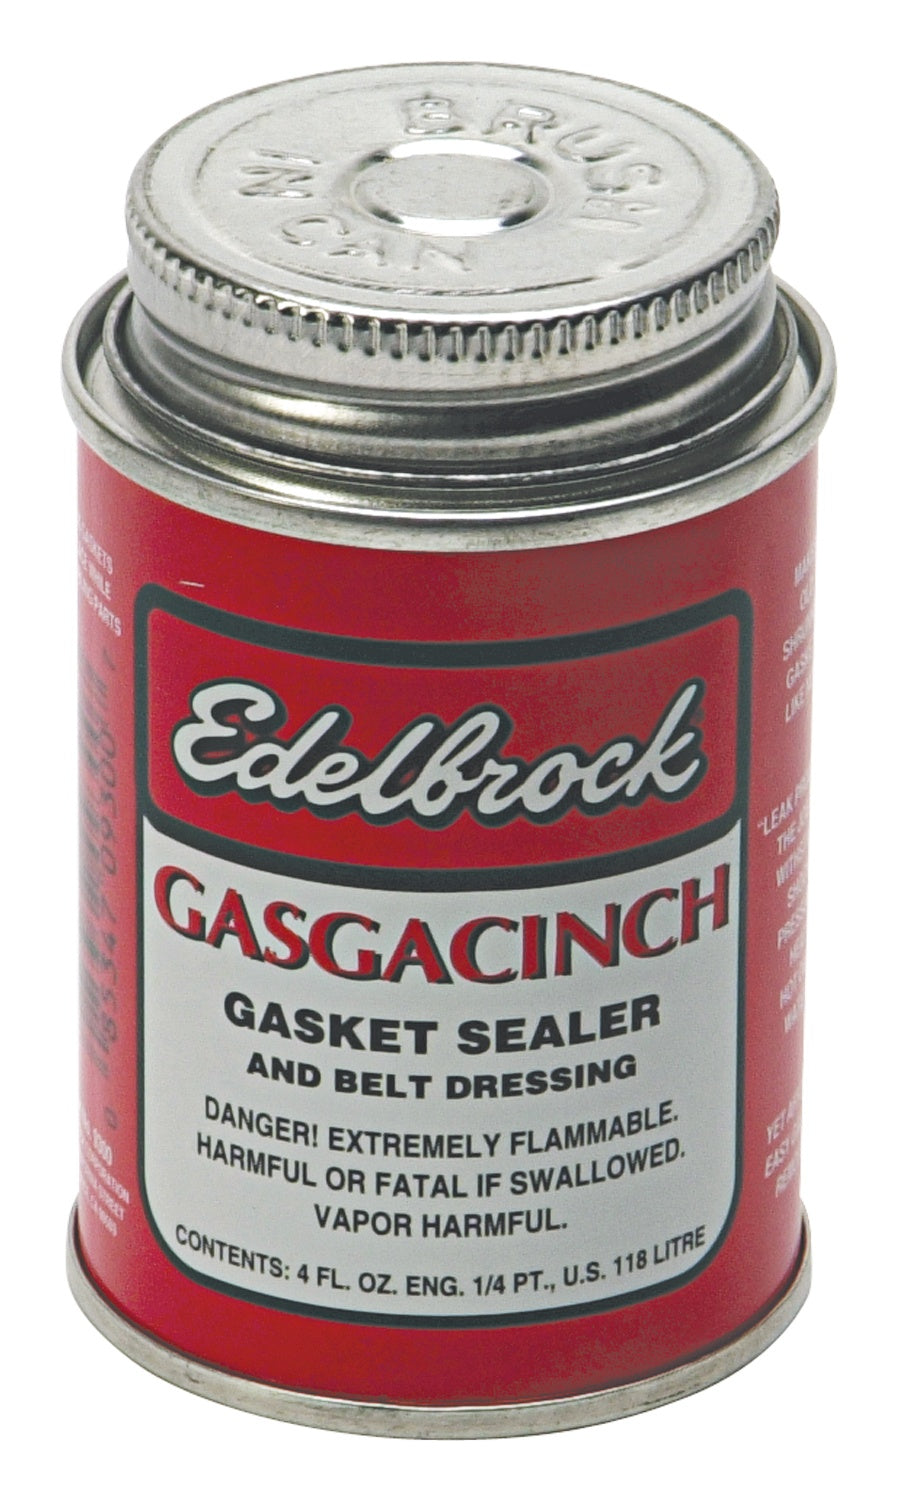 Edelbrock 9300 Edelbrock Gasgacinch Gasket Sealant